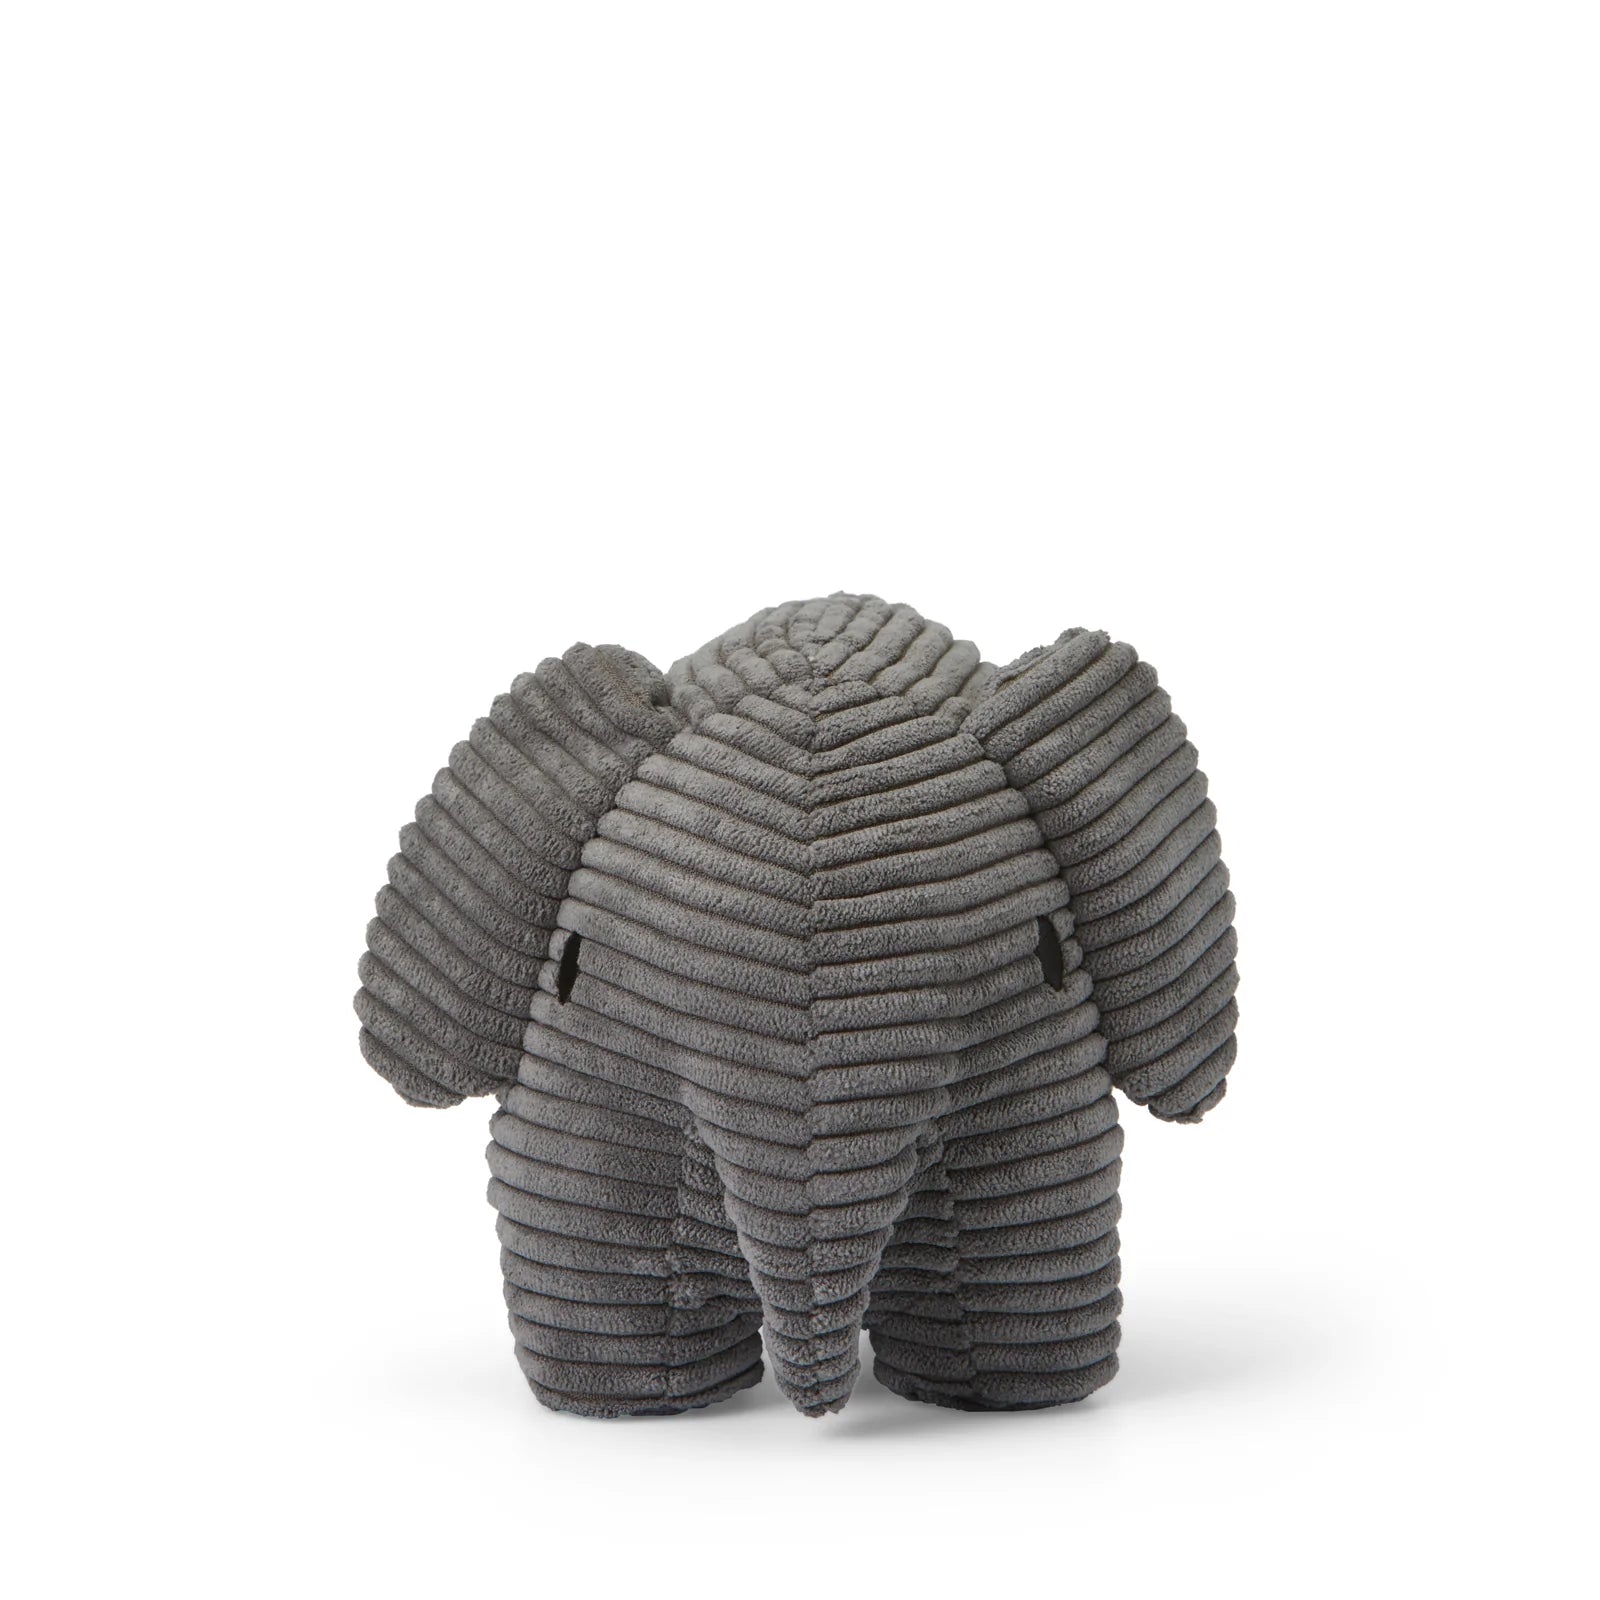 Miffy Elephant in Grey Corduroy